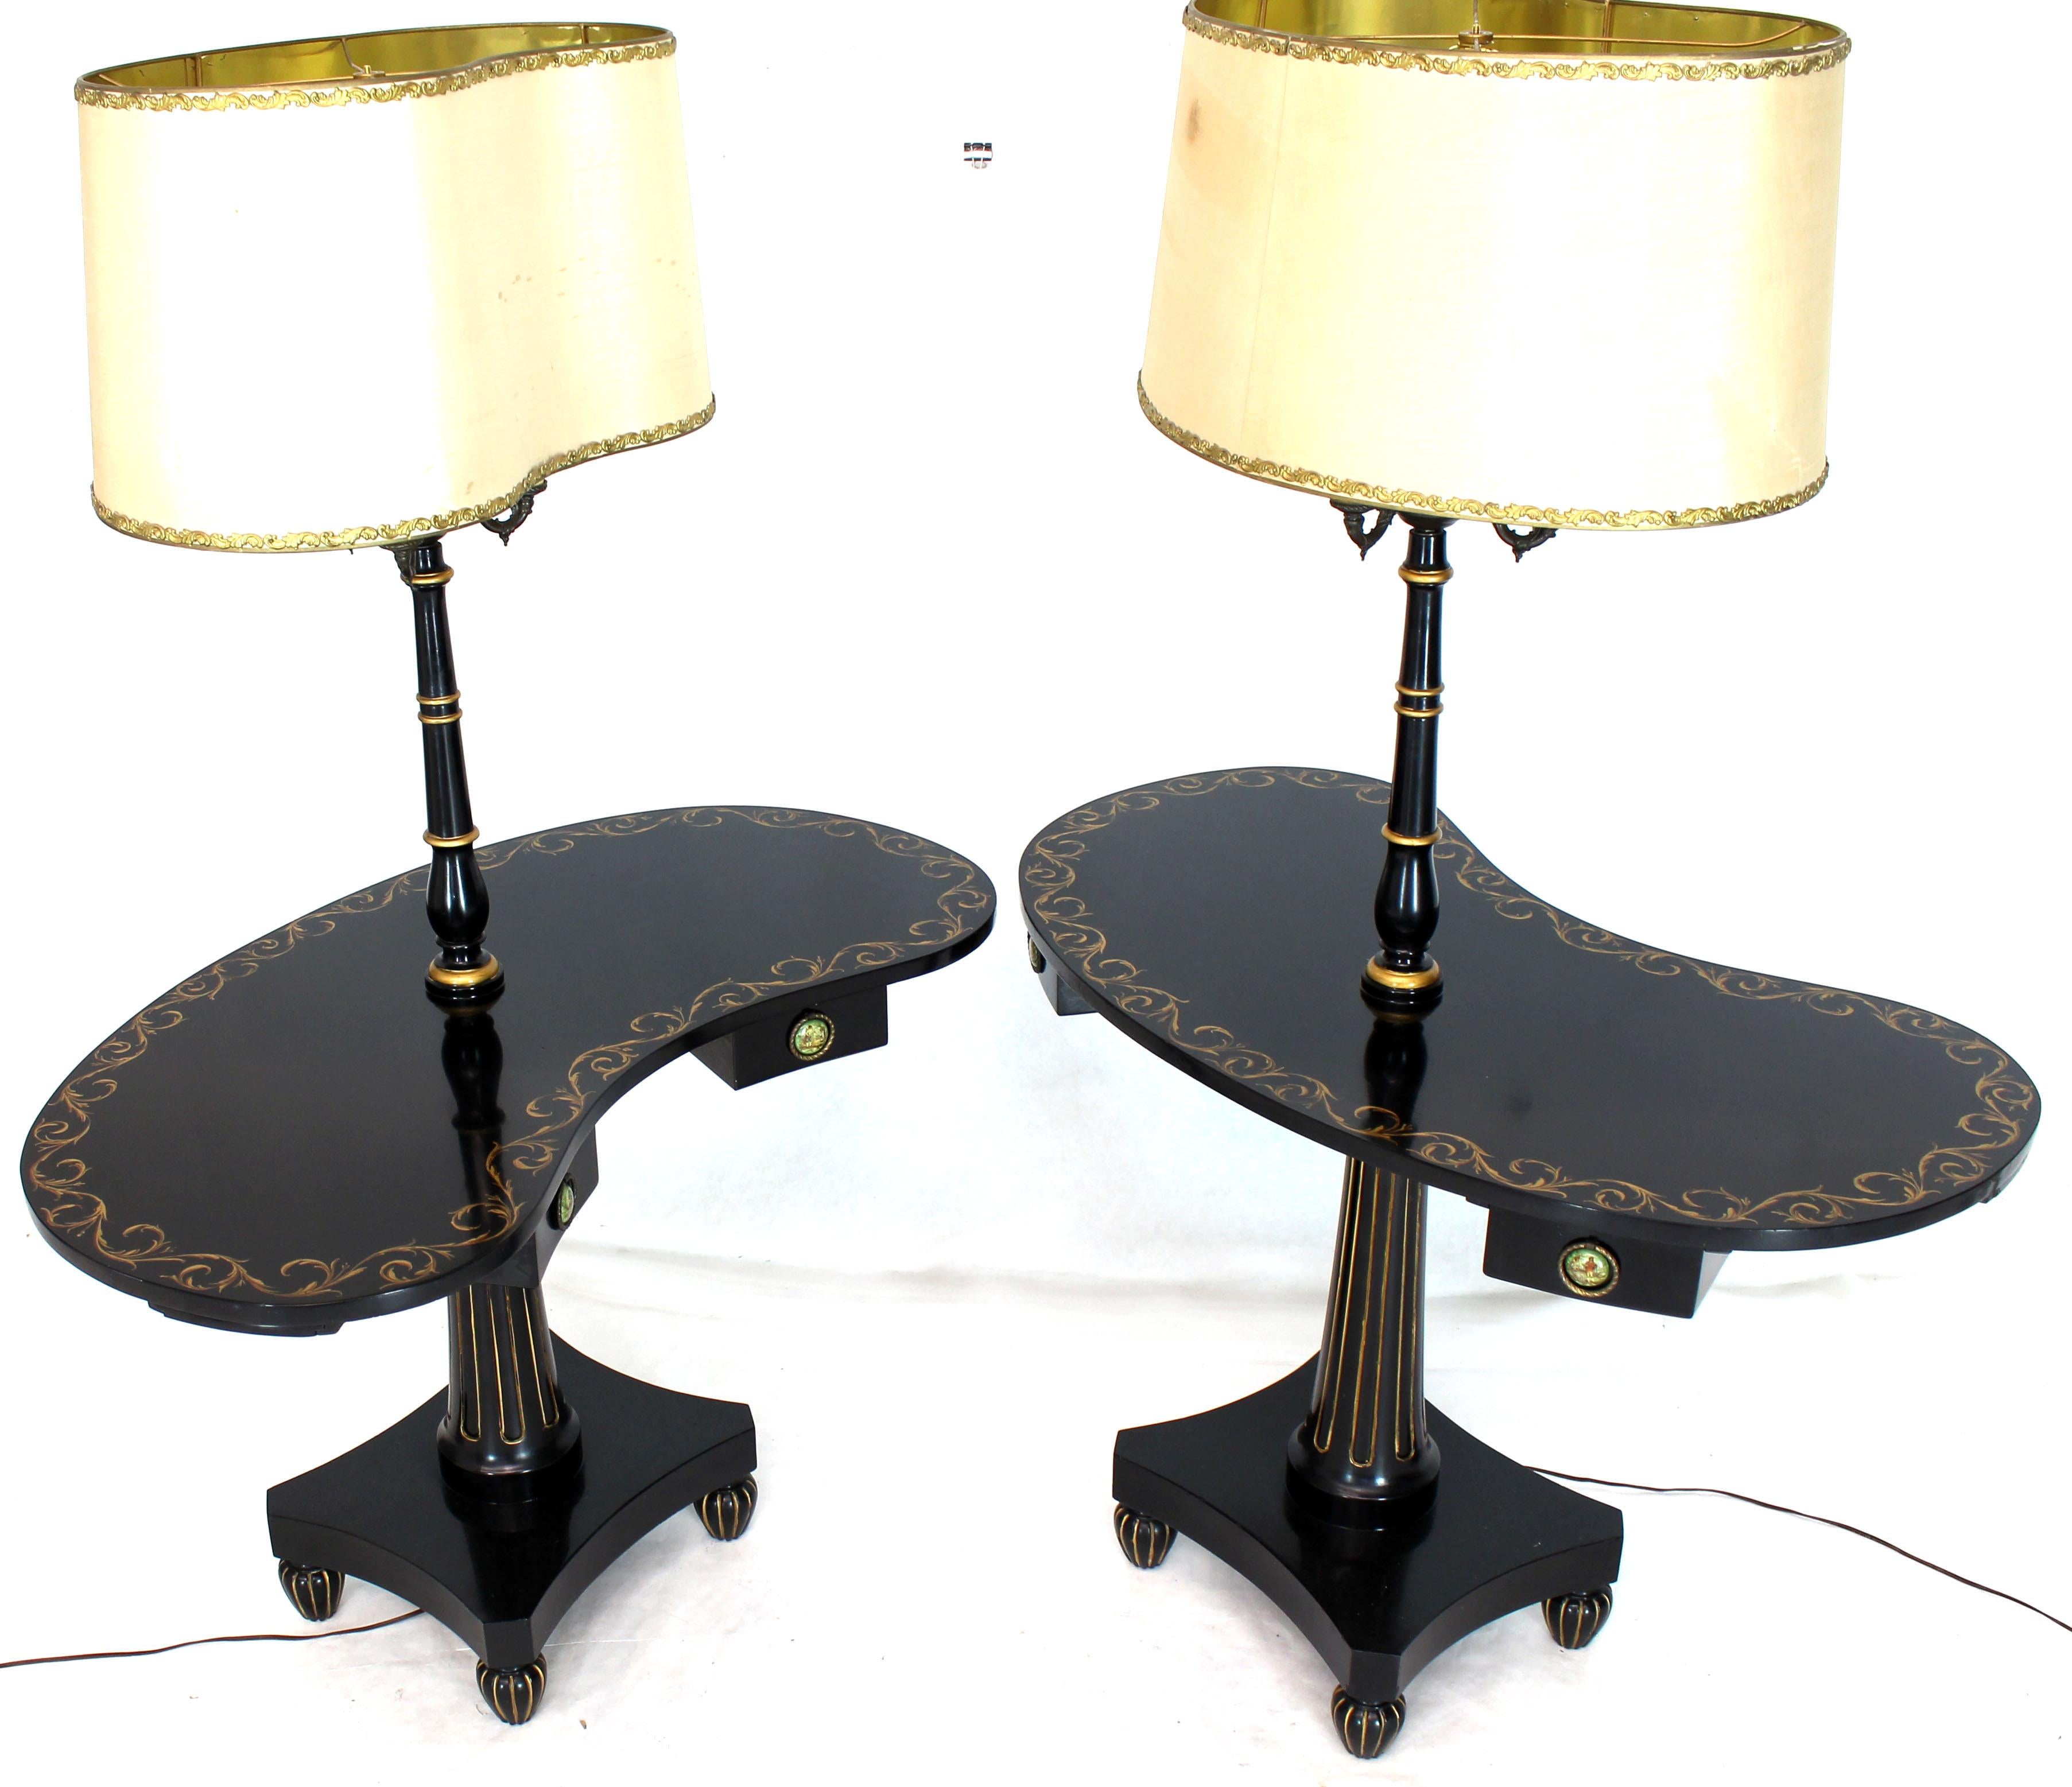 Gedreht und verjüngt Basen schwarzem Lack und Gold verziert Art Deco-Stil, ca. 1940er Jahre Nierenform Beistelltische Stehlampen. Goldverzierung im Adams-Stil.